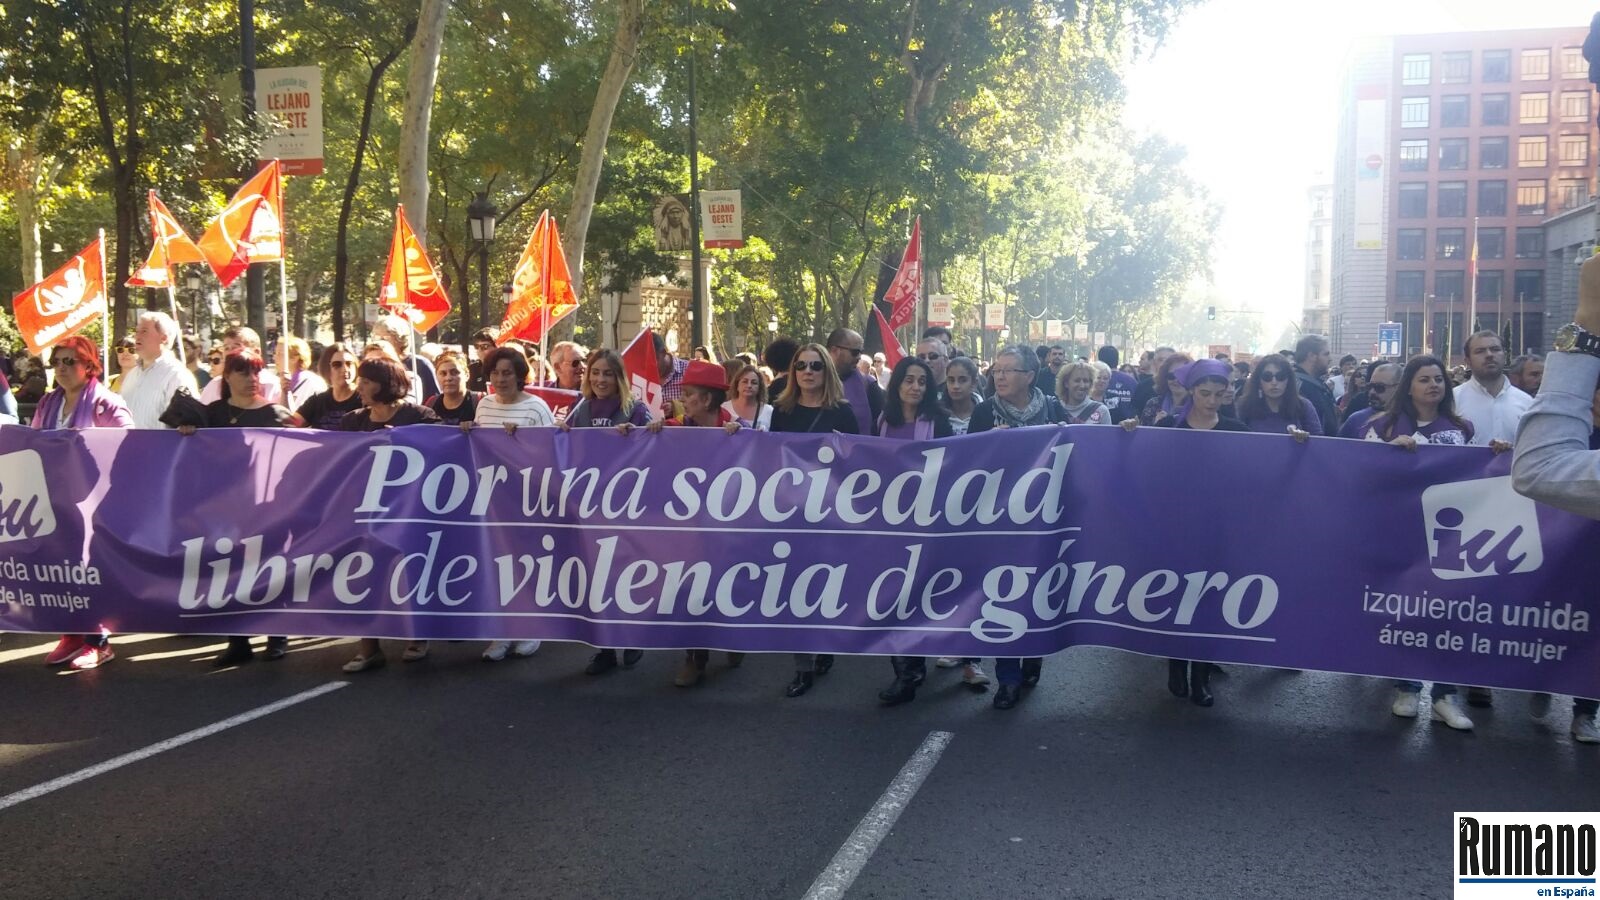 Numeroase-persoane-au-participat-la-un-protest-împotriva-violenței-la-Madrid-Violența-nu-are-gen